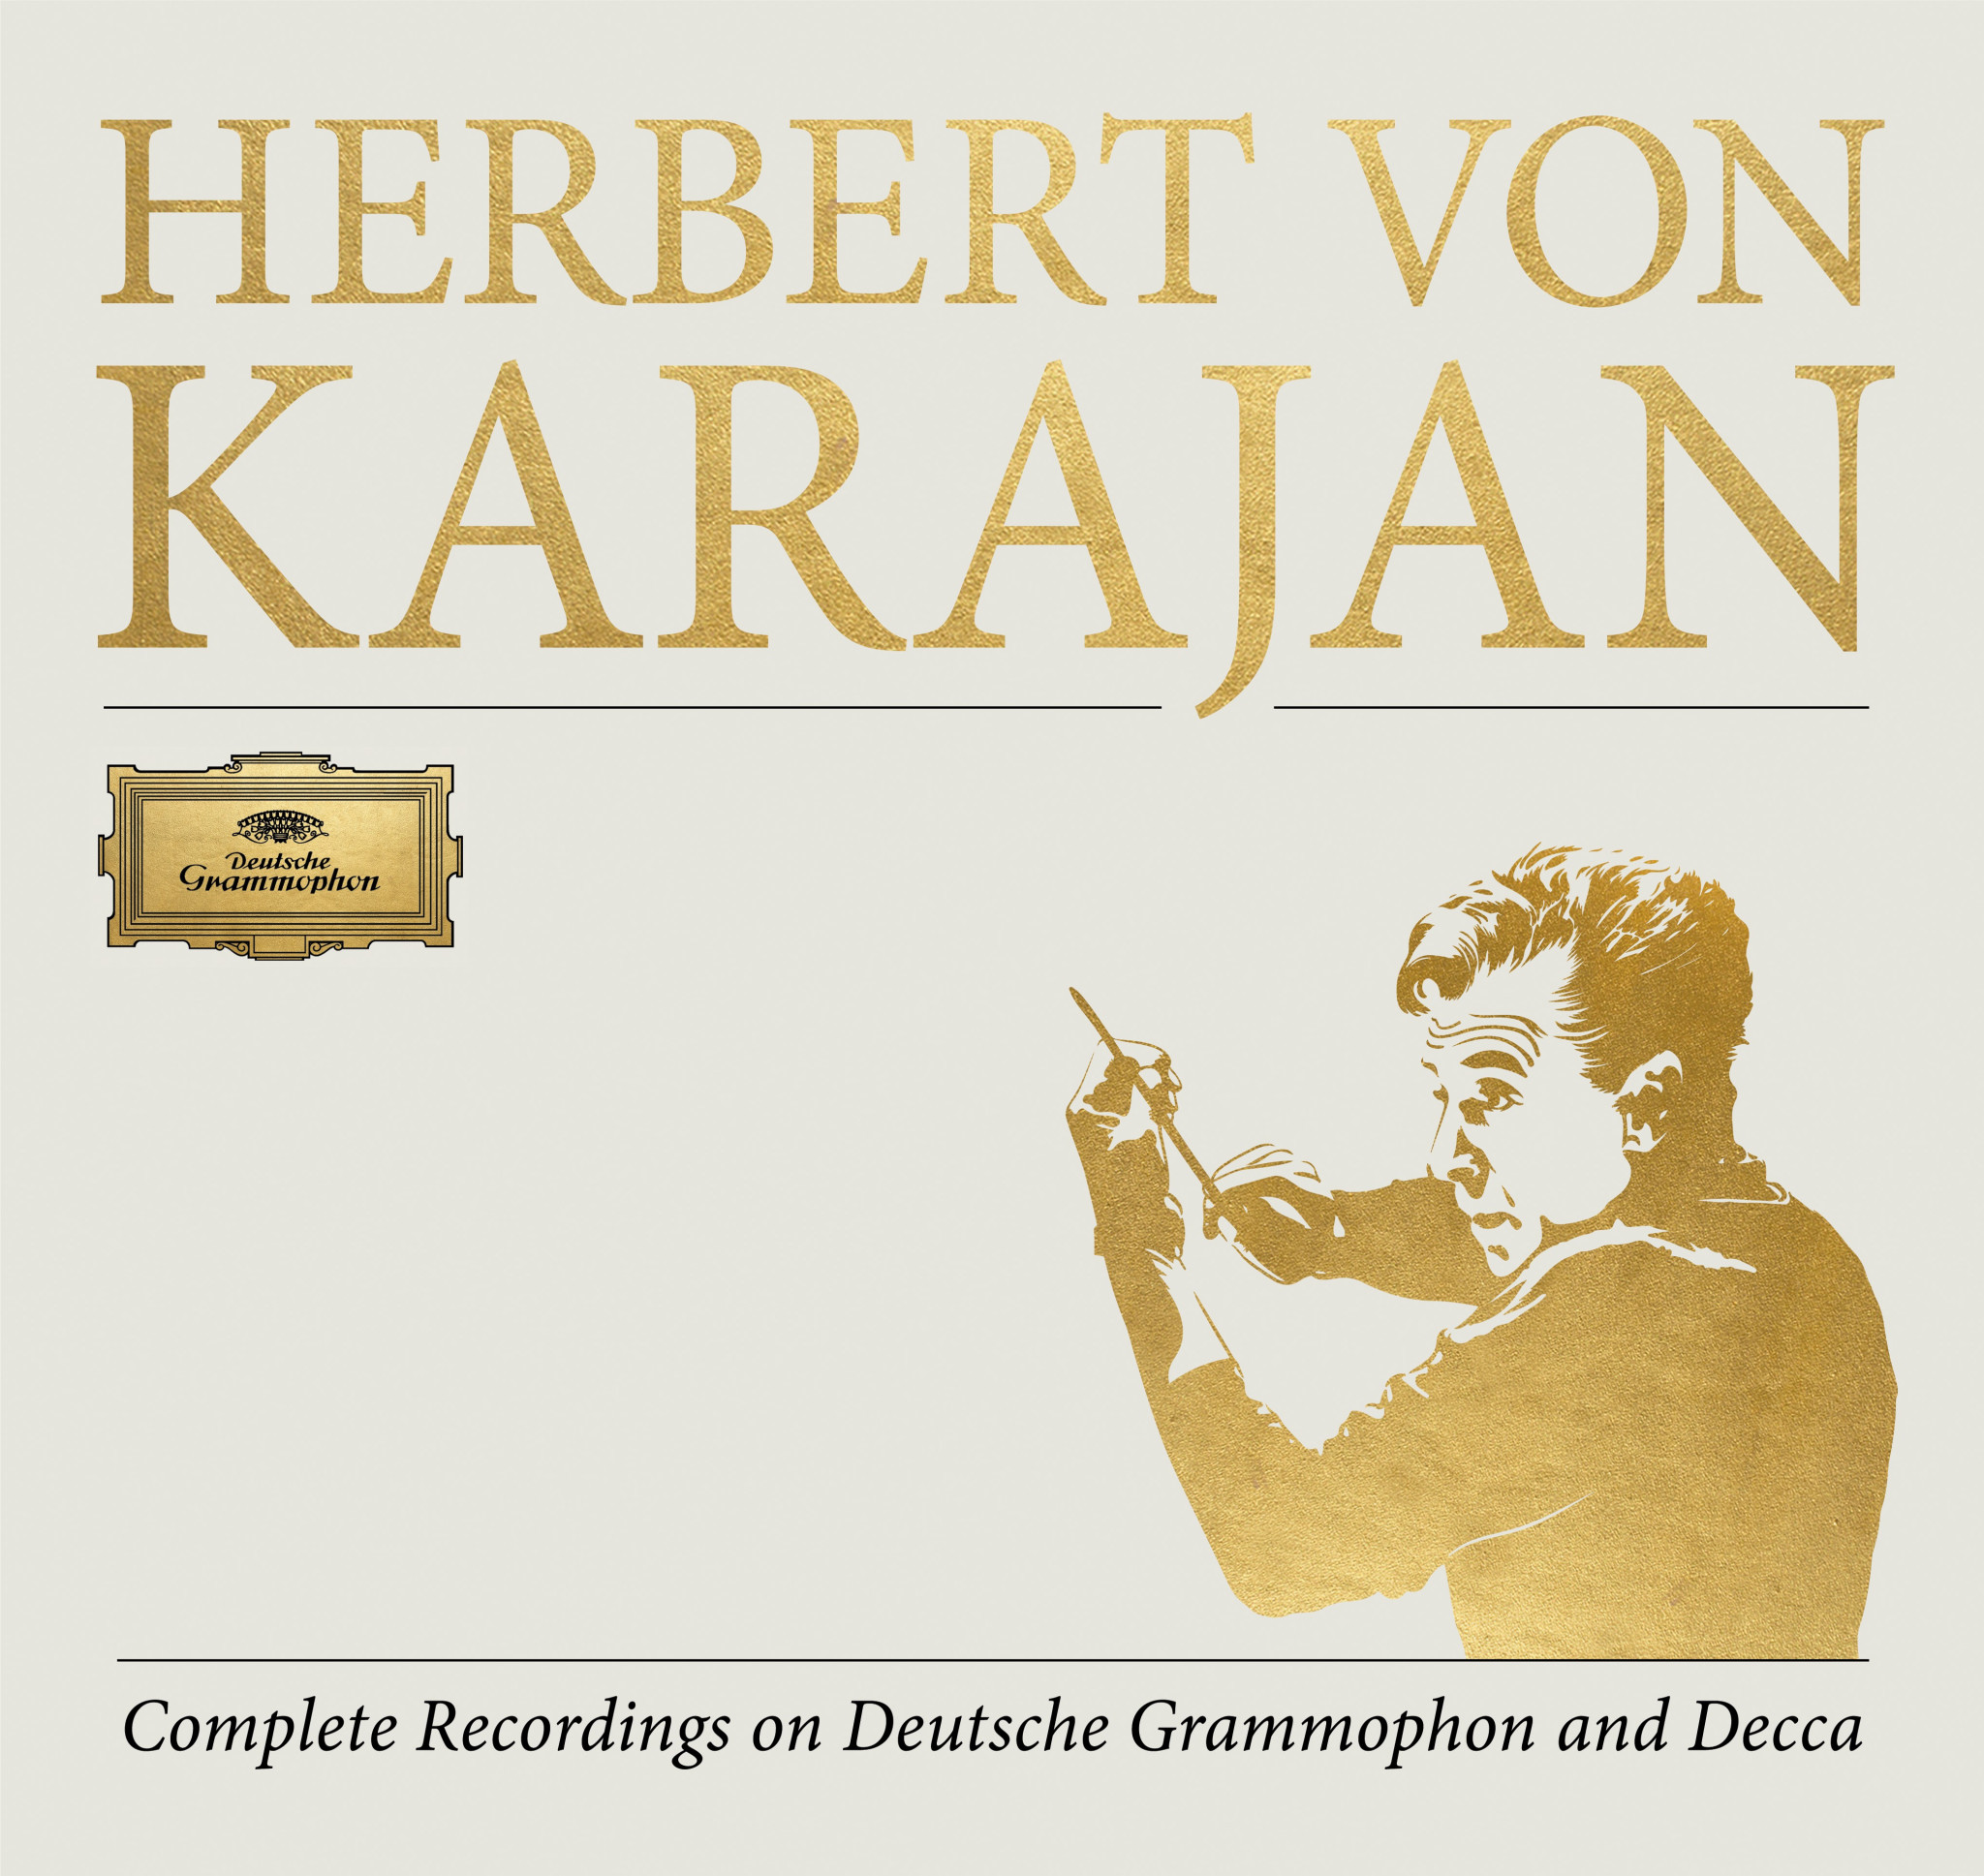 Complete Recordings on Deutsche Grammophon and Decca